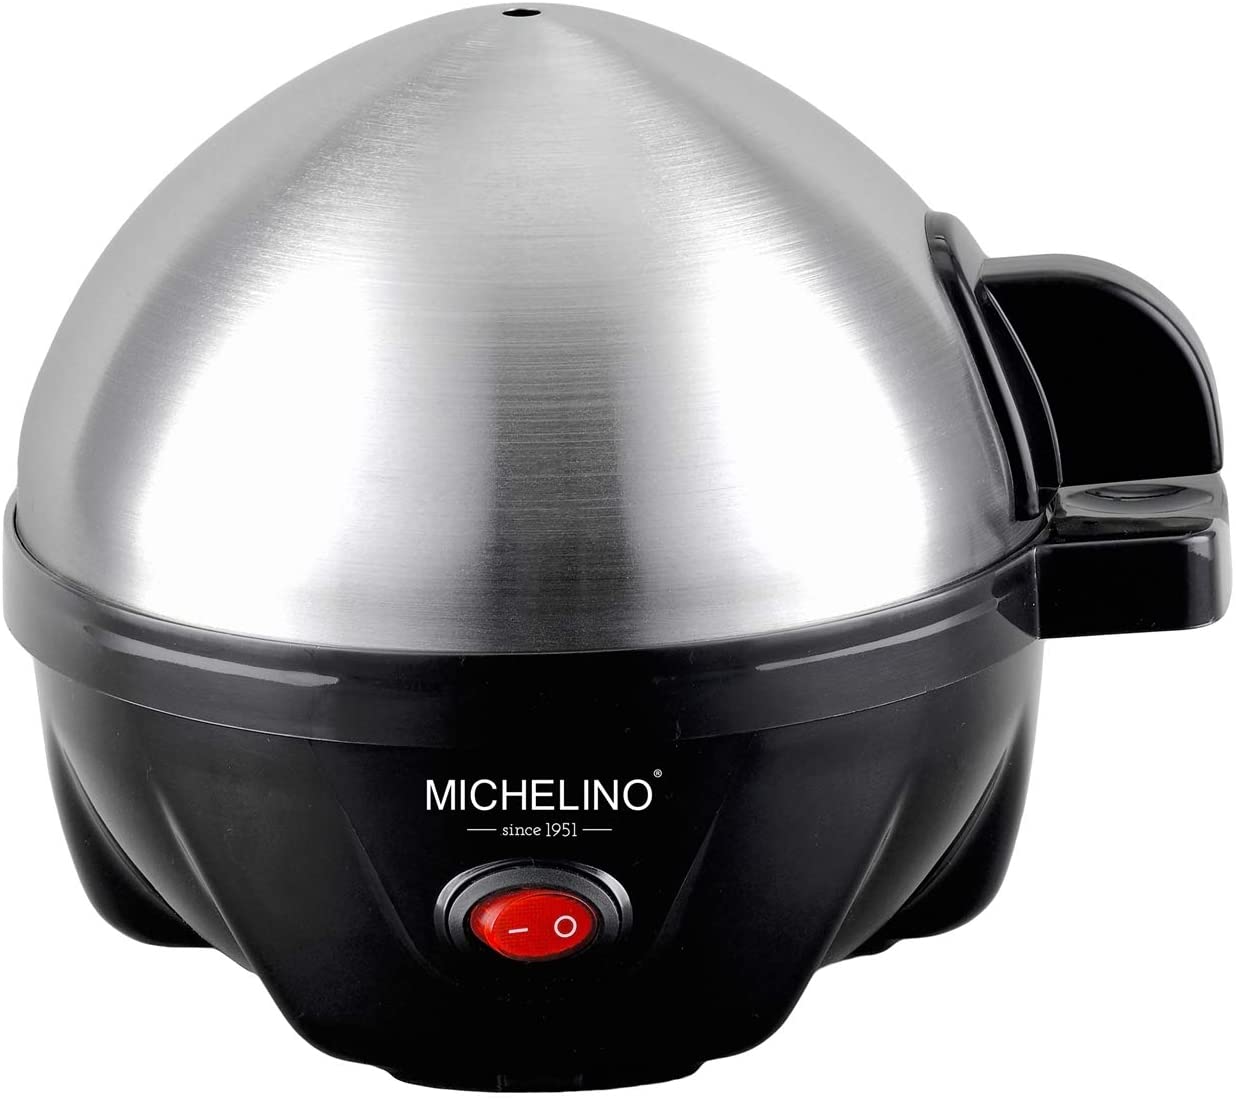 Michelino Egg Boiler 350 Watt